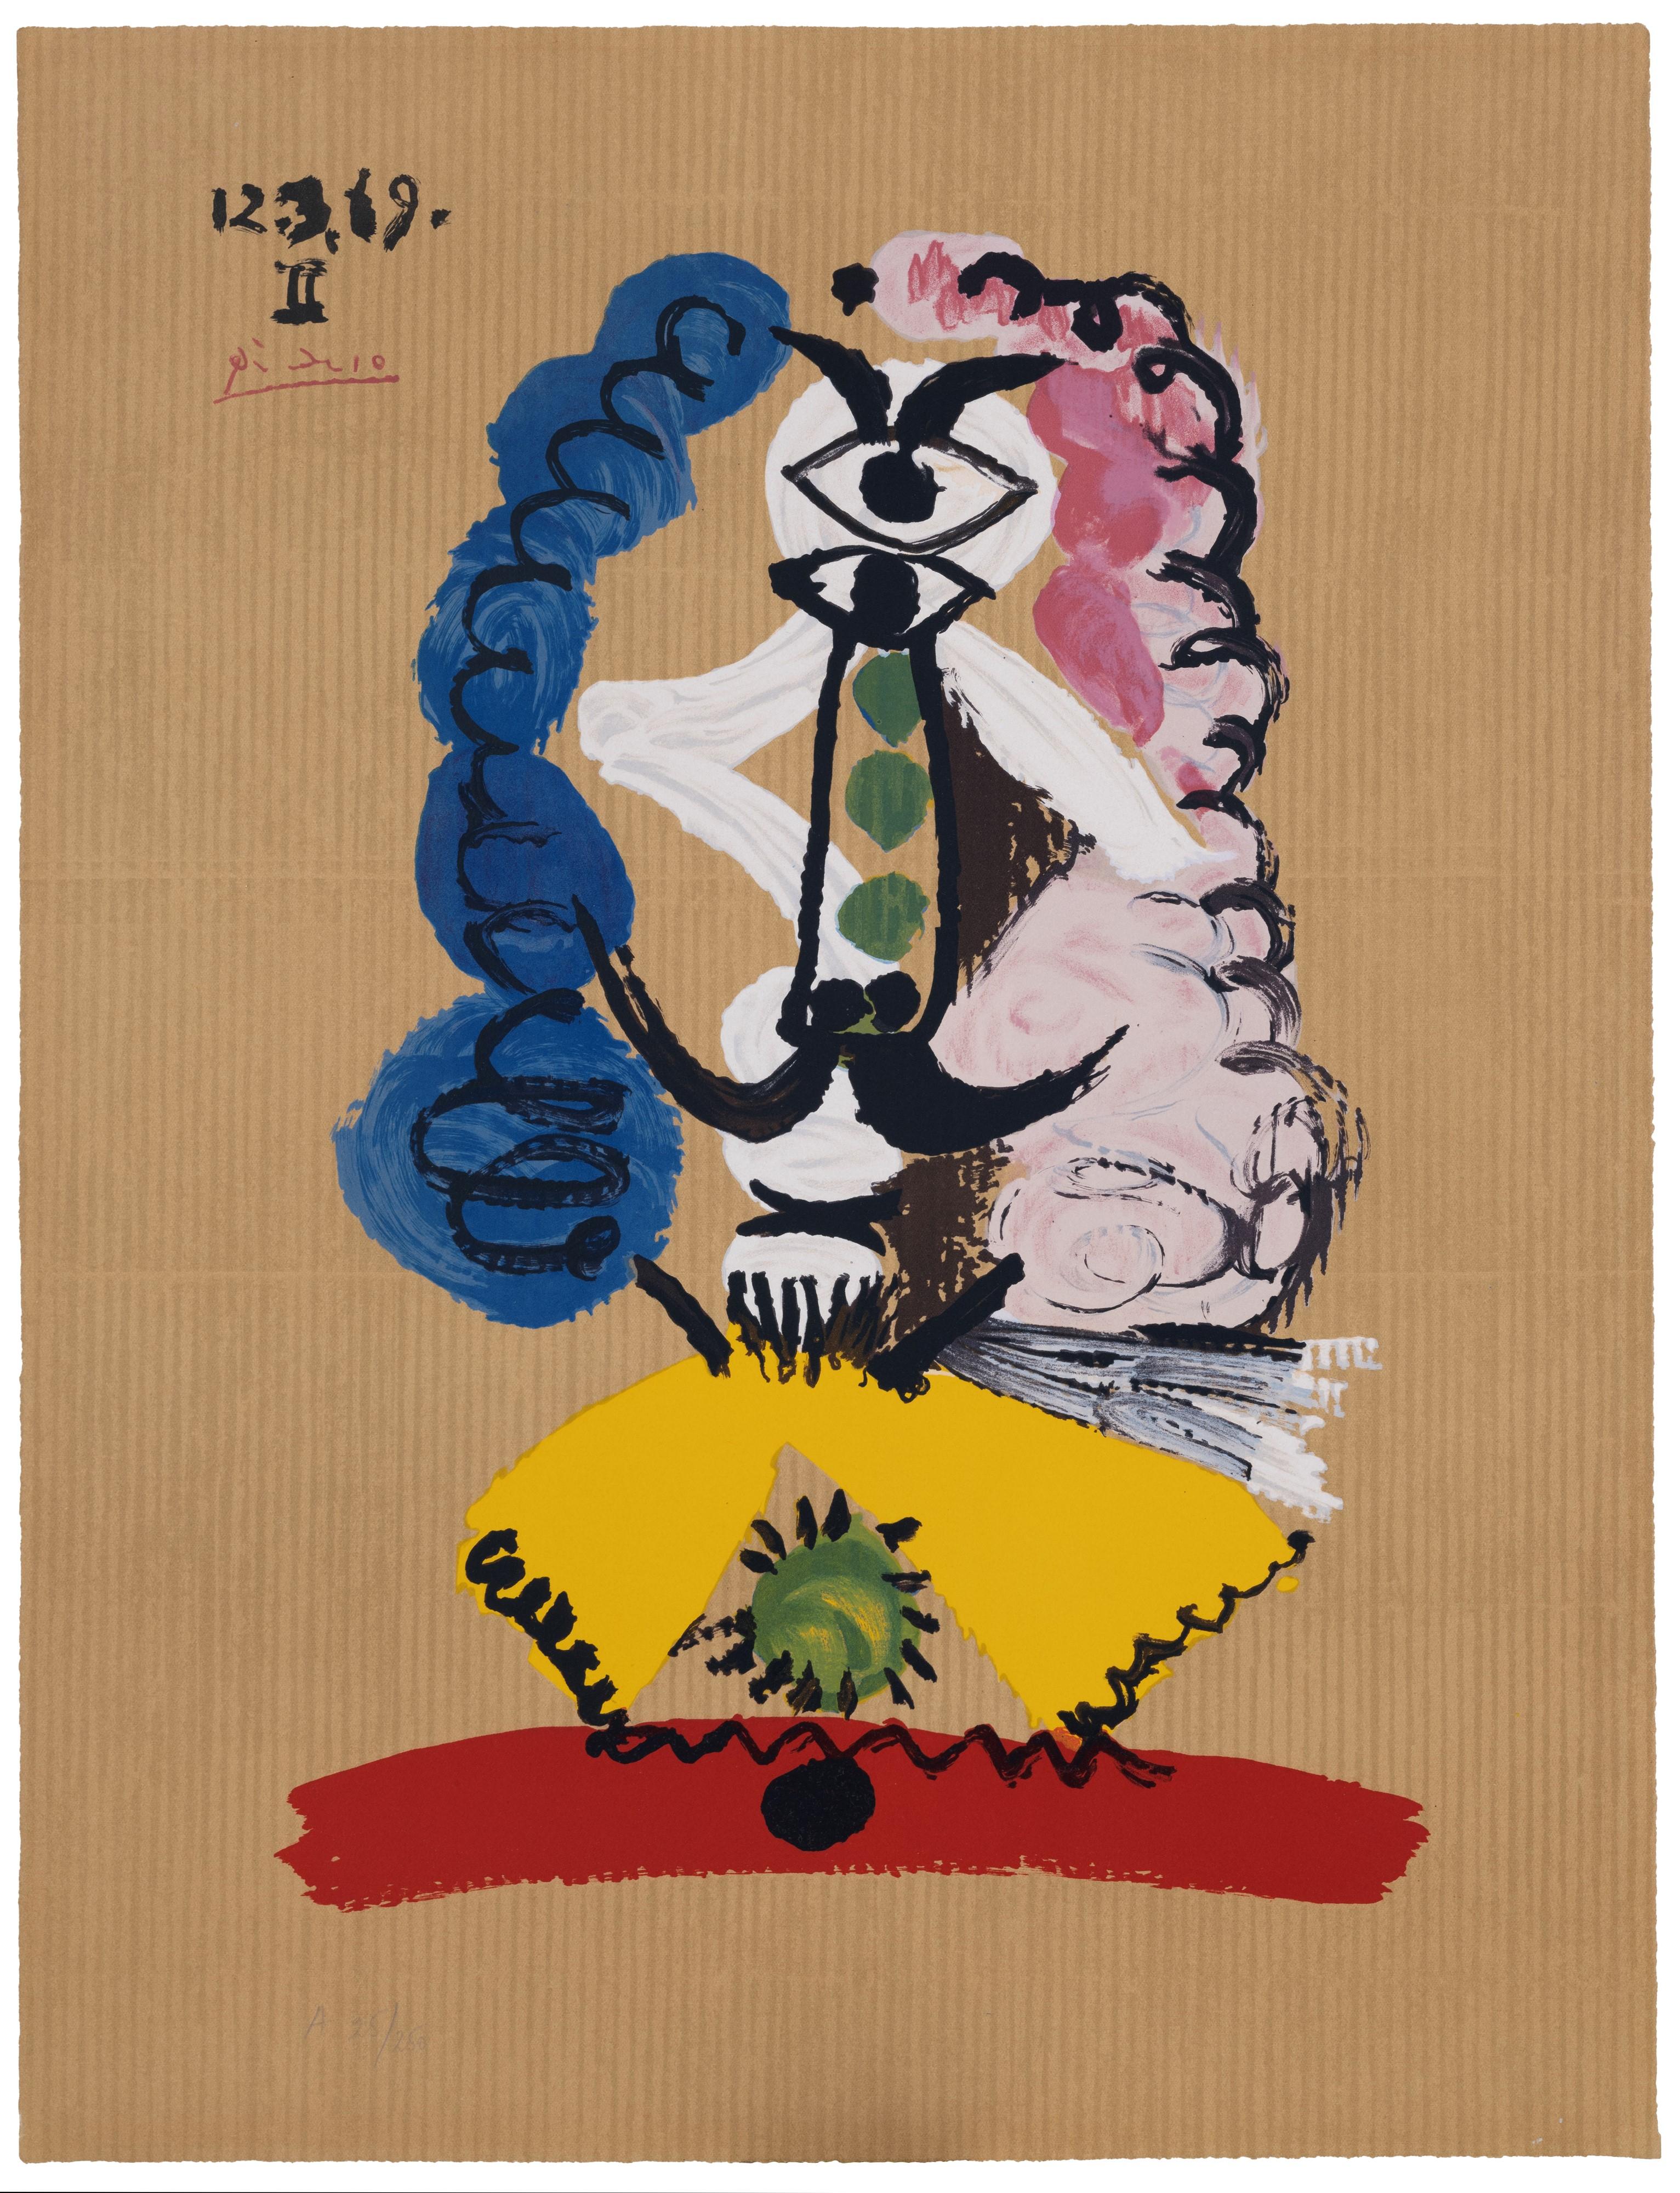 Lithographie en couleur de la série 'Portraits Imaginaires'
Publié par Georges Salinas, 1970
Edition : 250 pour la France (F) et 250 pour l'Amérique (A)
Signé dans la pierre, numéroté (A 25/250) au crayon en bas à gauche
format du papier : 65 x 50